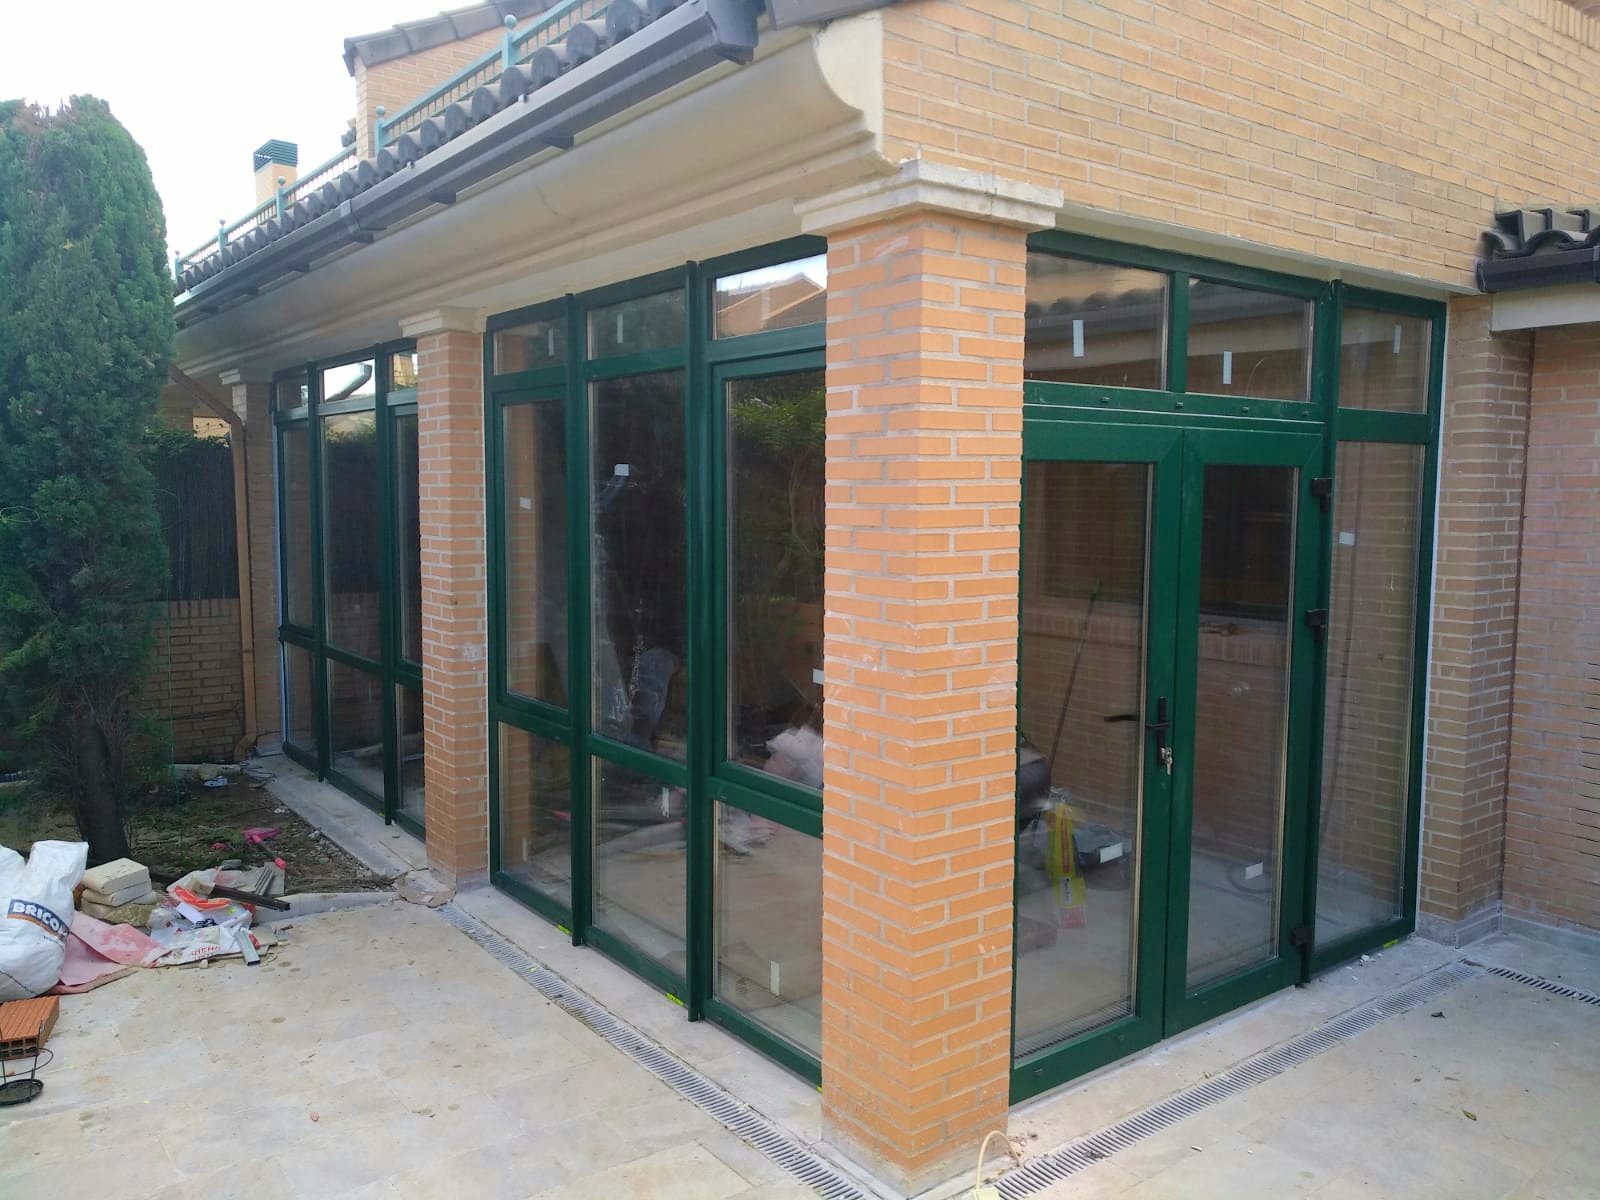 Окна и двери ПВХ REHAU поворотно-откидные установленные на террасе в Валенсии цвет зеленый, зеркальное стекло